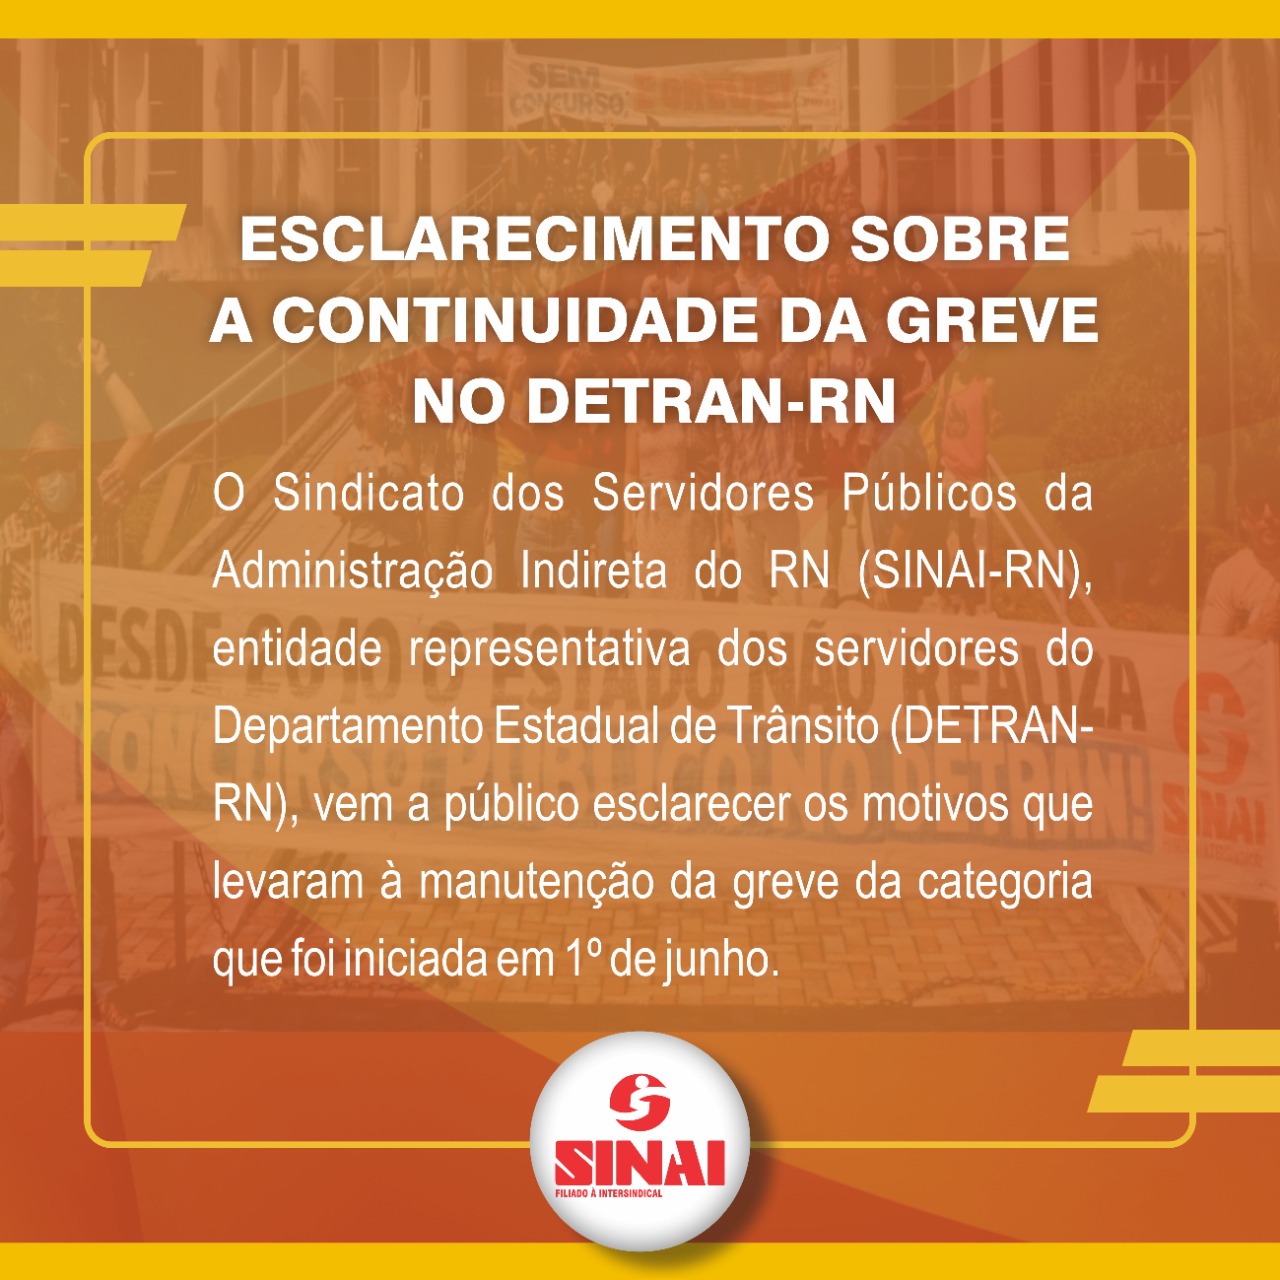 Esclarecimento sobre a continuidade da greve no DETRAN-RN - Sinai -  Sindicato dos Servidores Públicos da Administração Indireta do RN